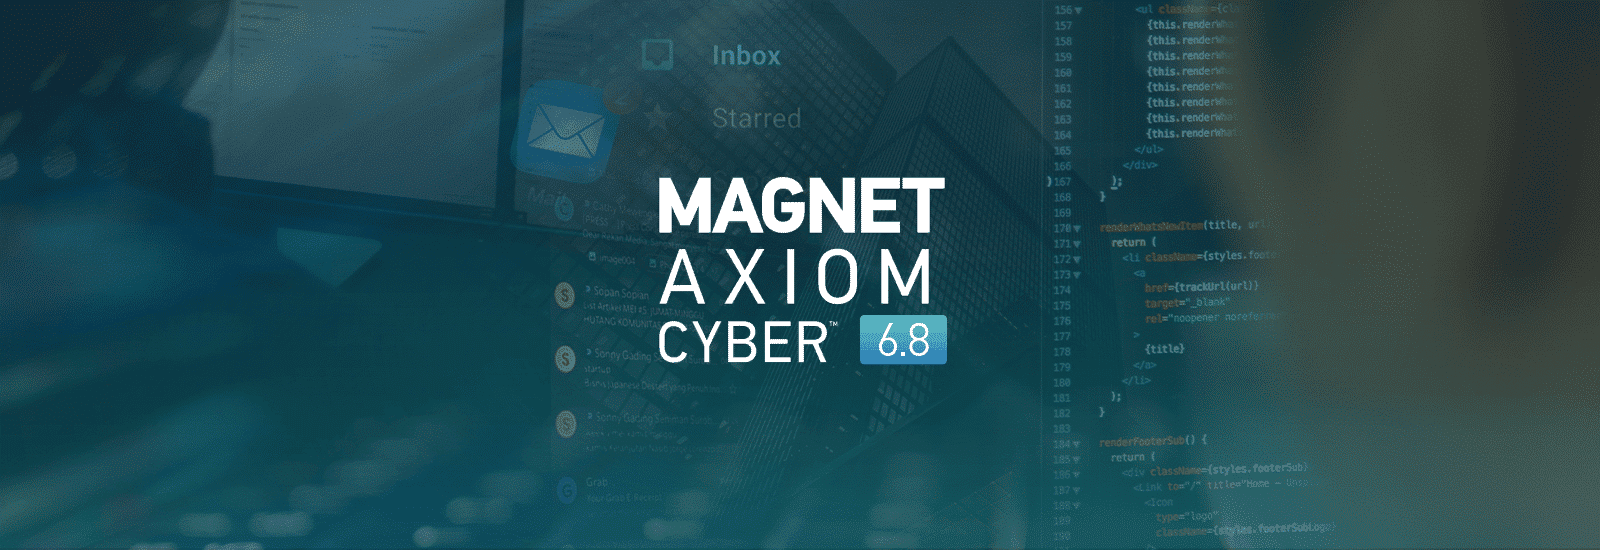 Magnet AXIOM Cyber 6.8